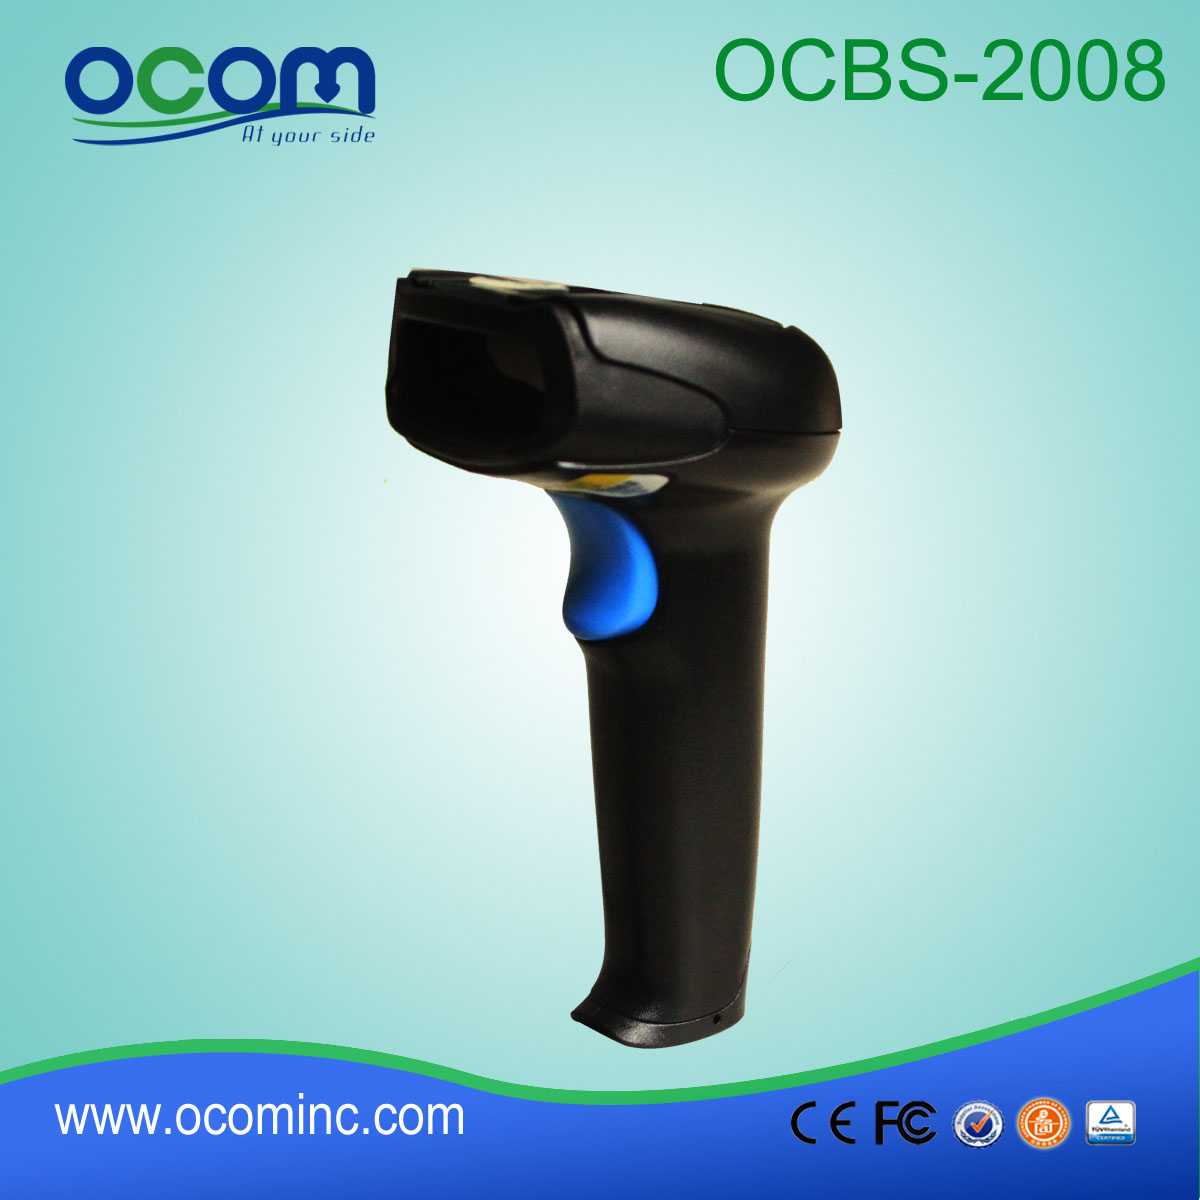 OCBs-2008 Высокая скорость сканирования Ручной 2D сканер штрих-кода Промышленные